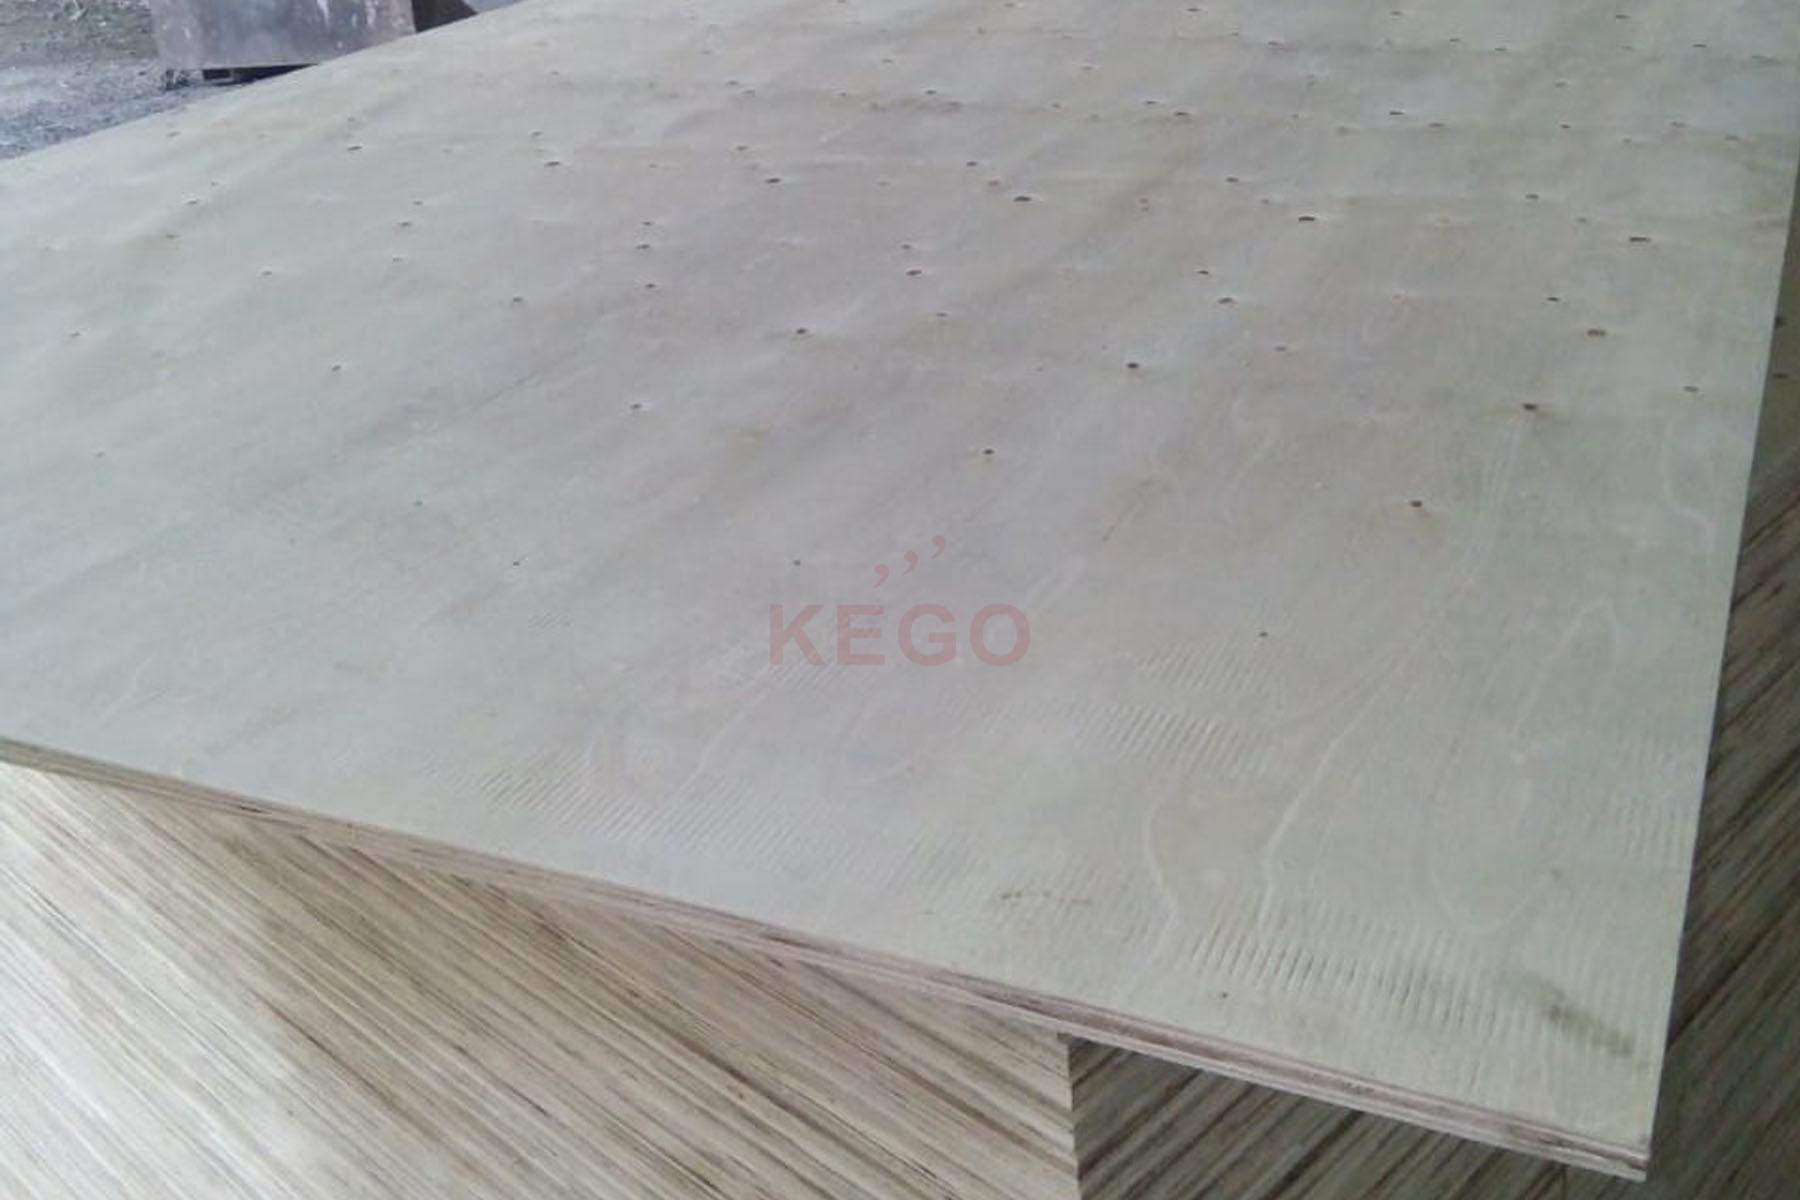 https://kego.com.vn/wp-content/uploads/2016/10/packing-plywood-kego-6.jpg